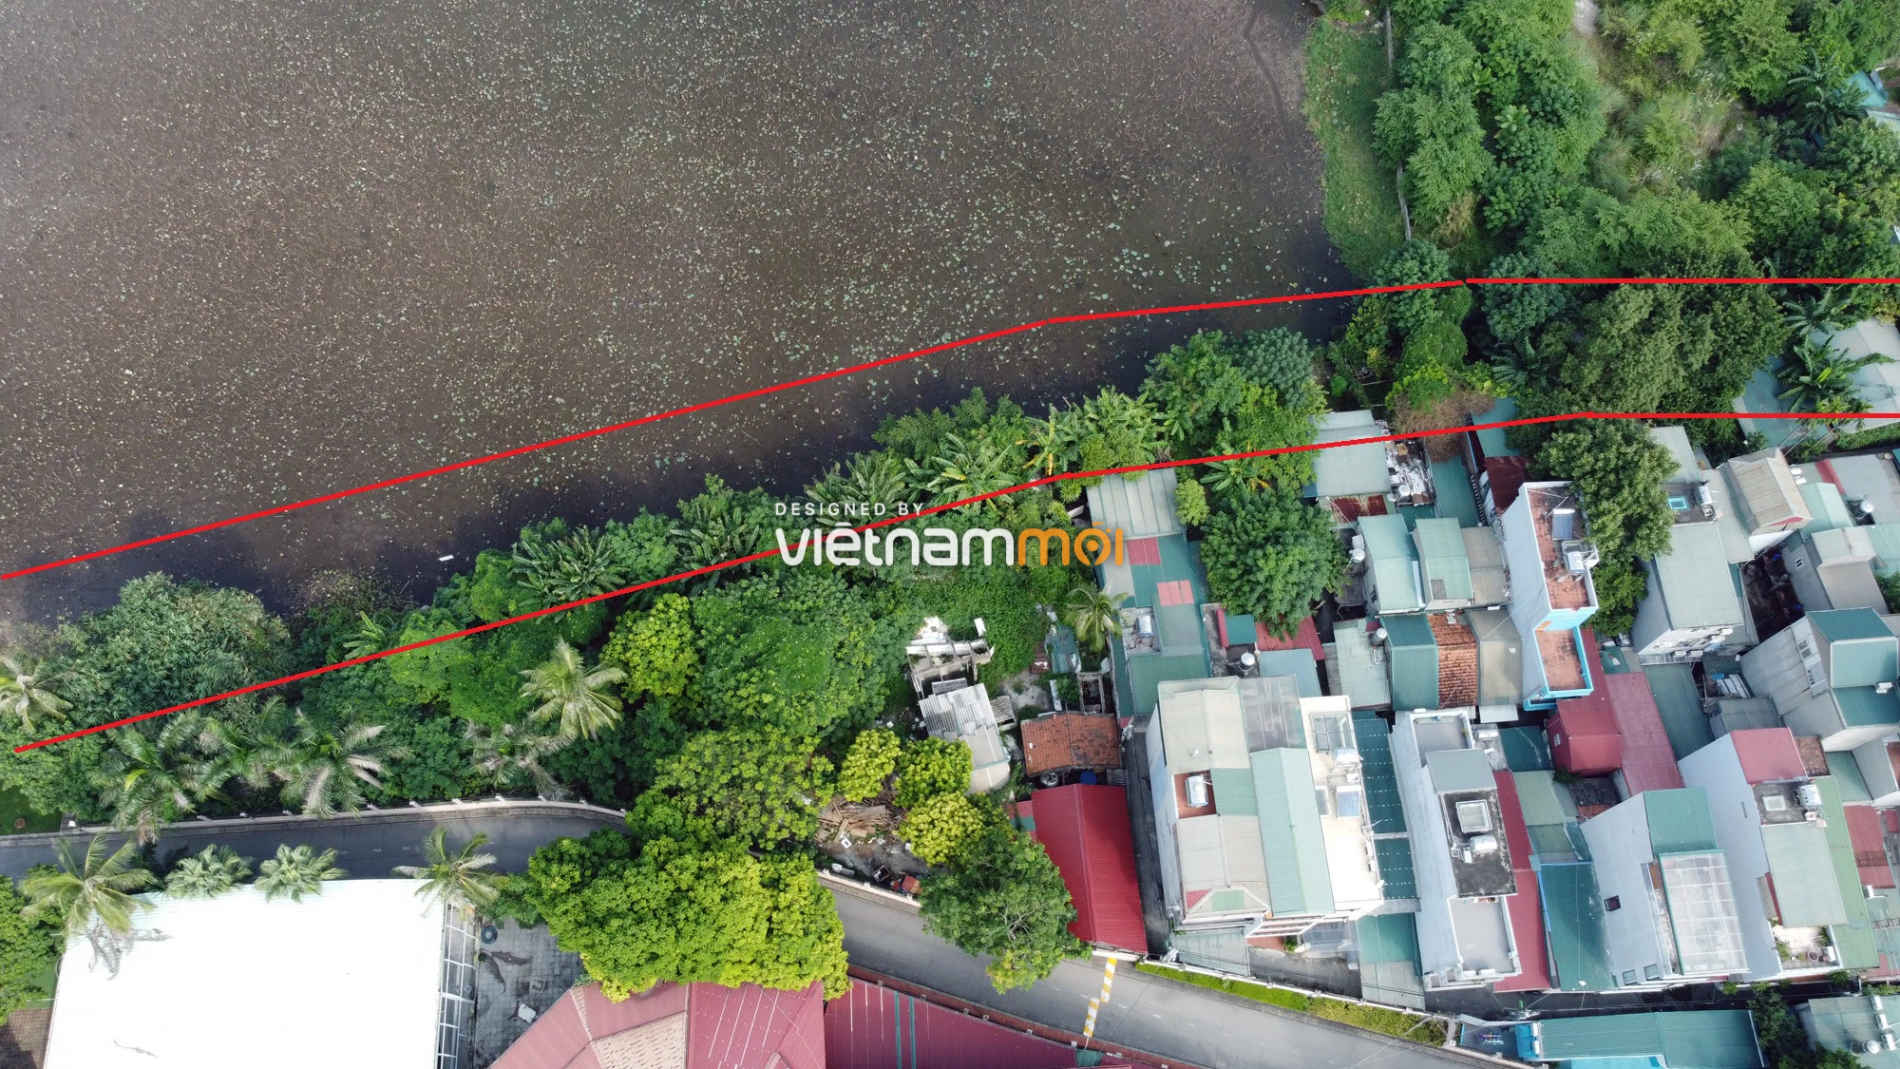 Những khu đất sắp thu hồi để mở đường ở quận Tây Hồ, Hà Nội (phần 4) - Ảnh 7.